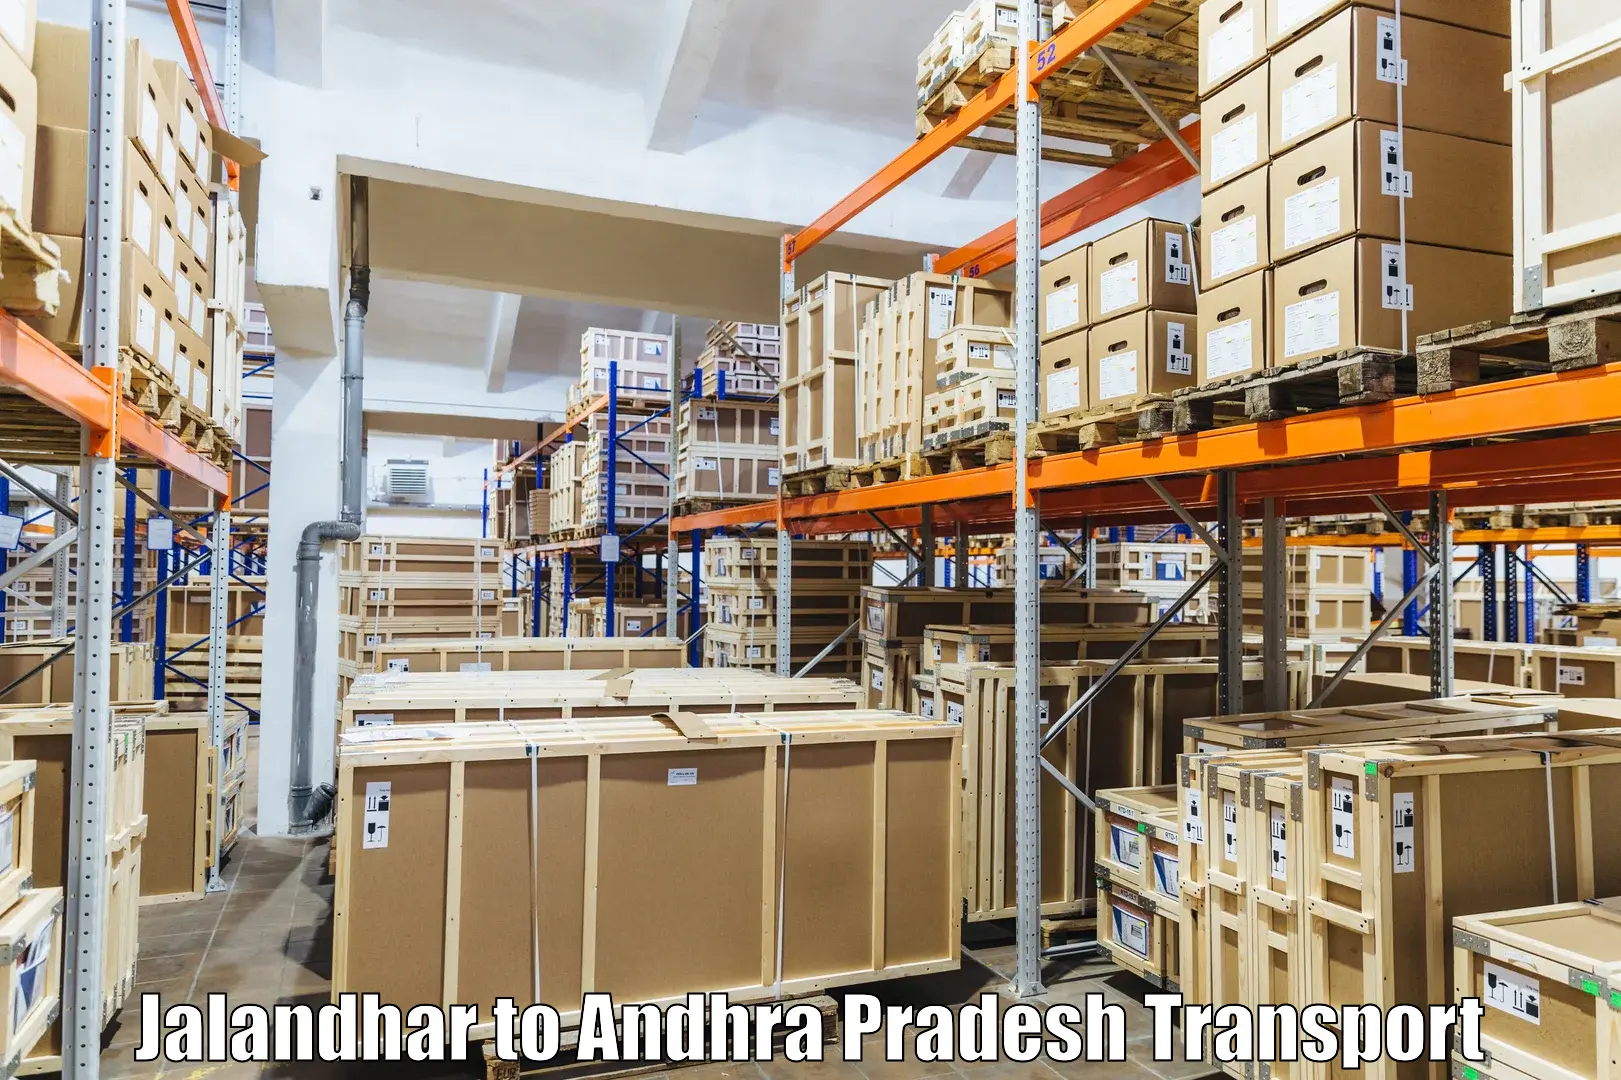 Daily parcel service transport Jalandhar to Yerragondapalem